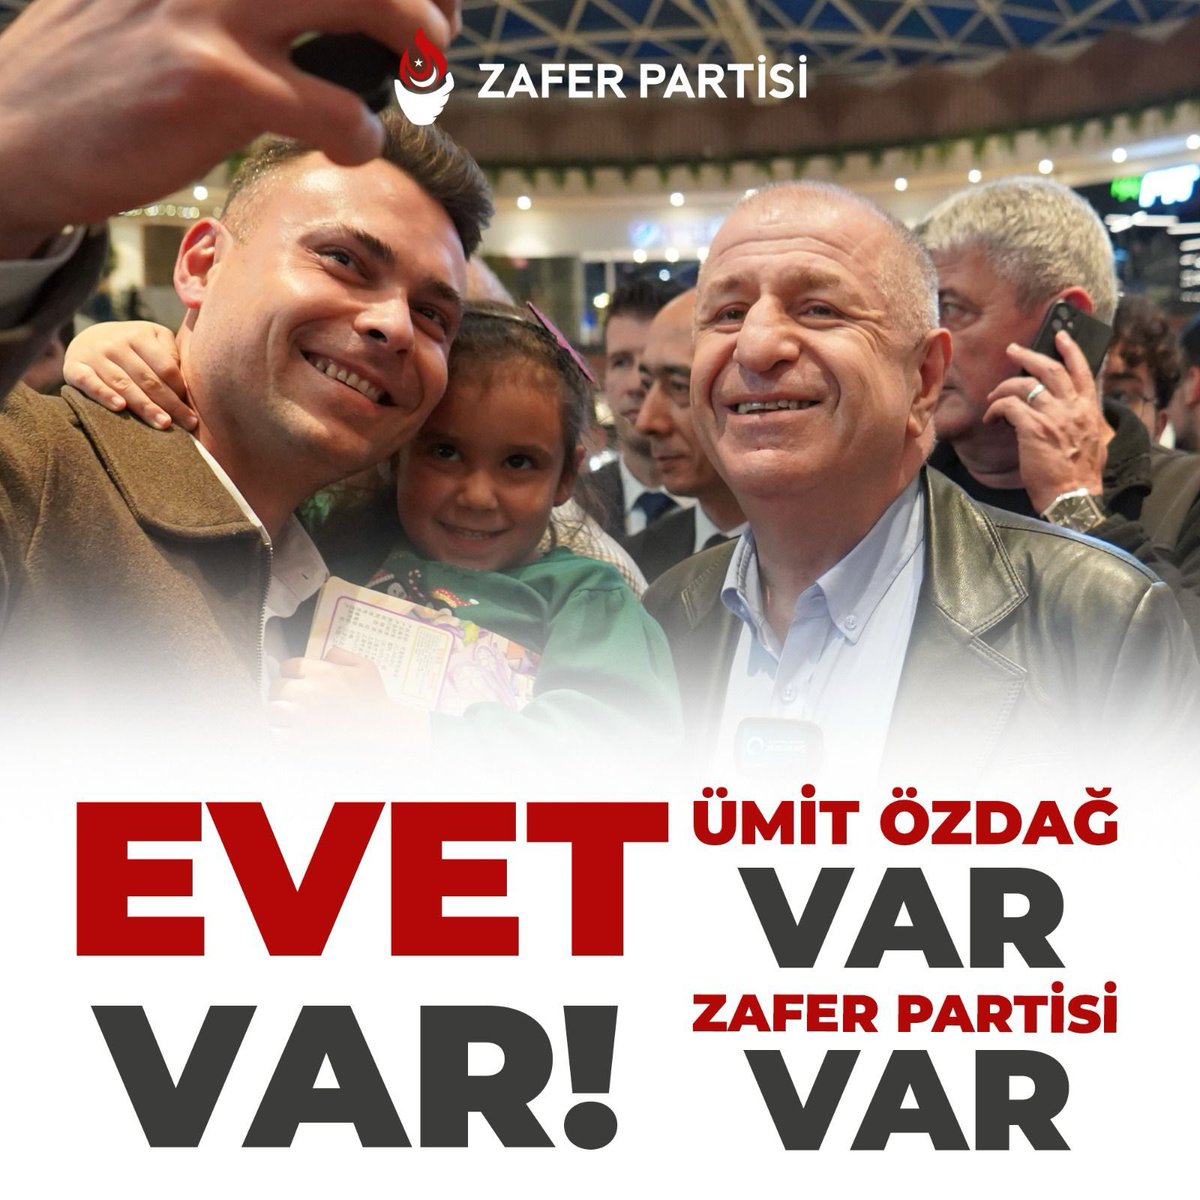 “AKP ve CHP’den başka oy verecek parti mi var?”, “Başka oy verilebilecek parti yok!” gibi söylemlere hep birlikte #Evetvar diyoruz! ÜMİT ÖZDAĞ VAR! ZAFER PARTİSİ VAR!